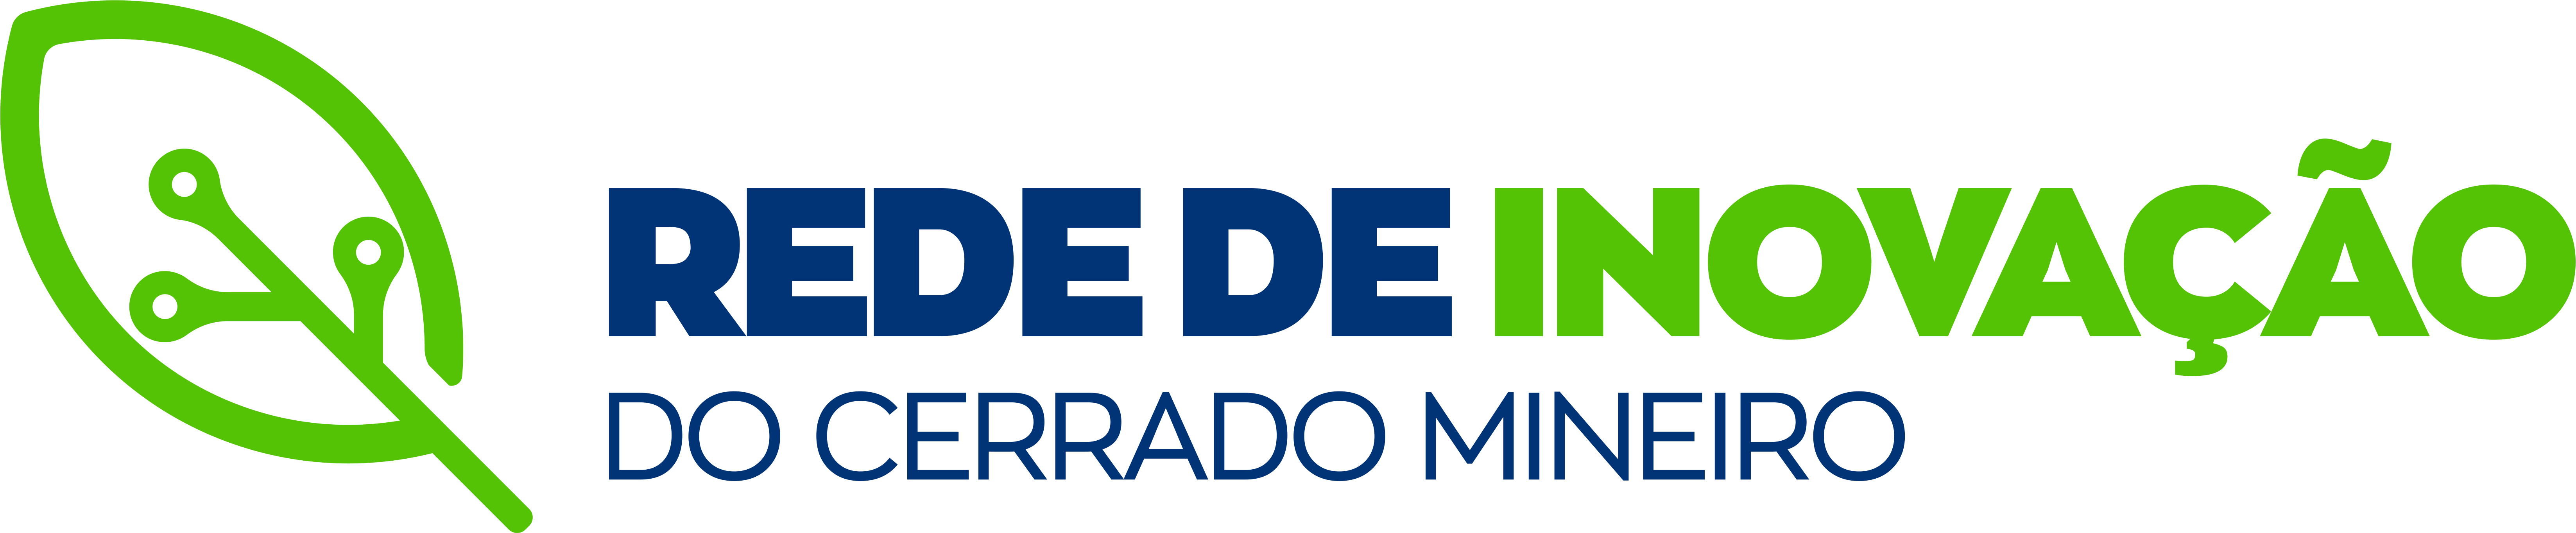 Logo - Rede de Inovação Agropecuária do Cerrado Mineiro